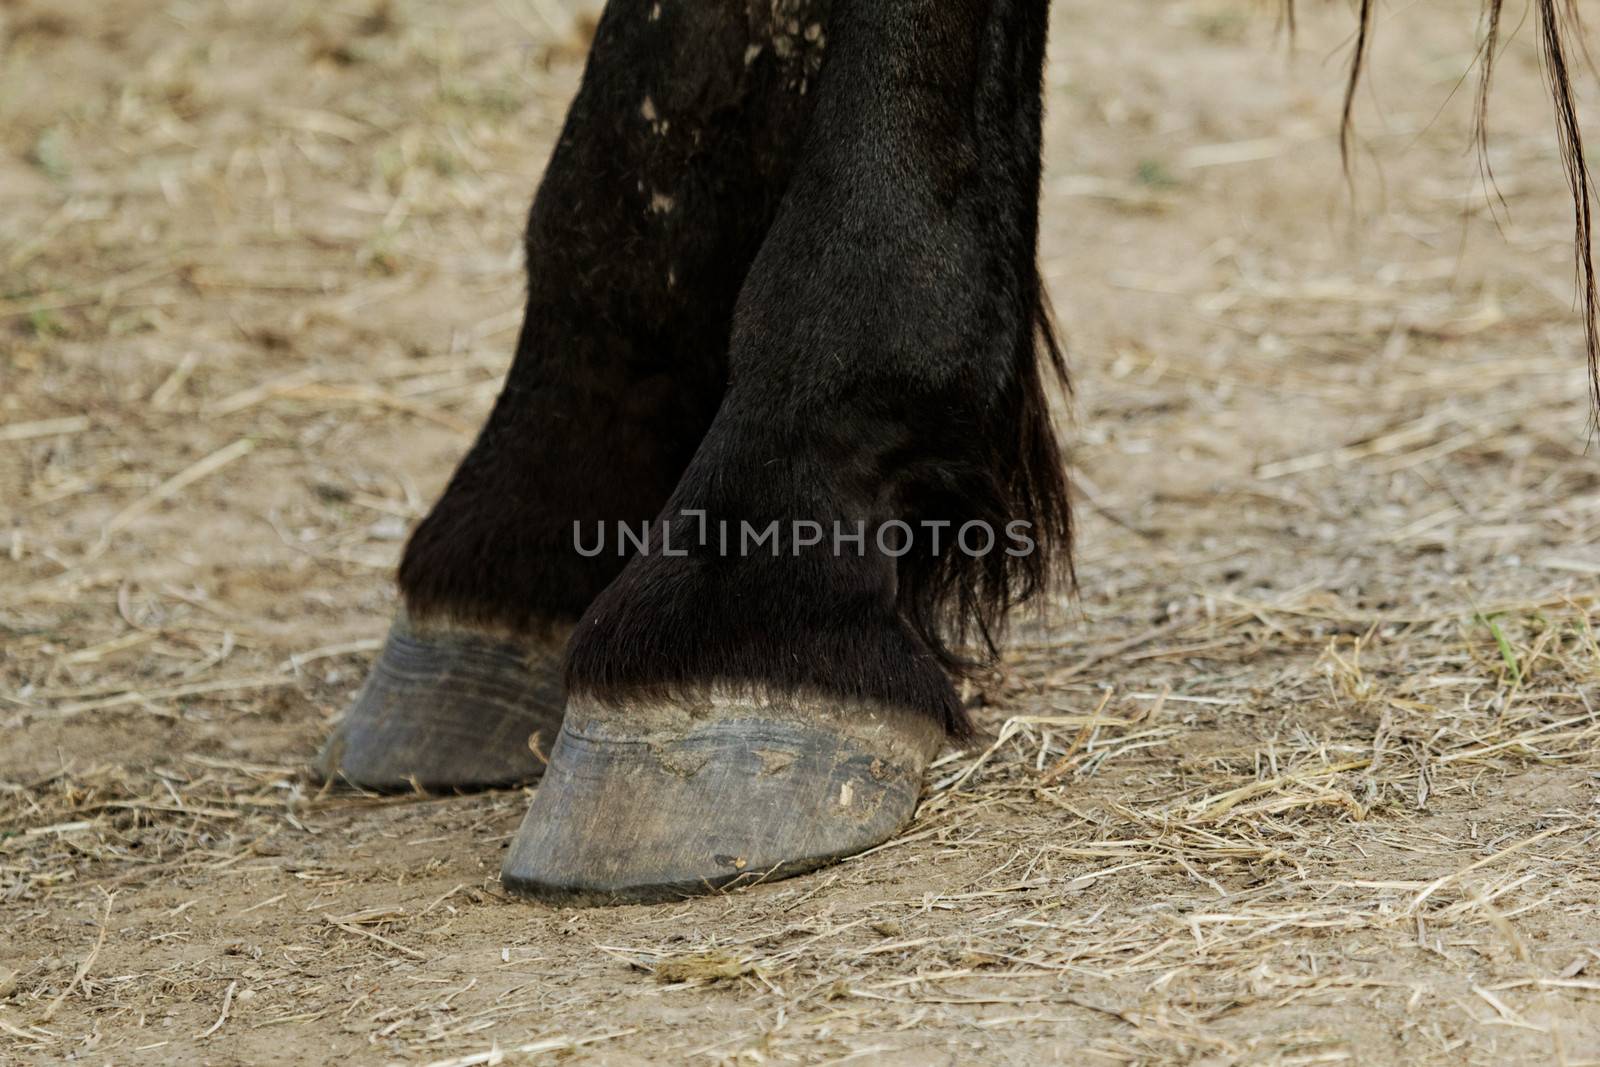 black horse leg and hoof without horseshoe